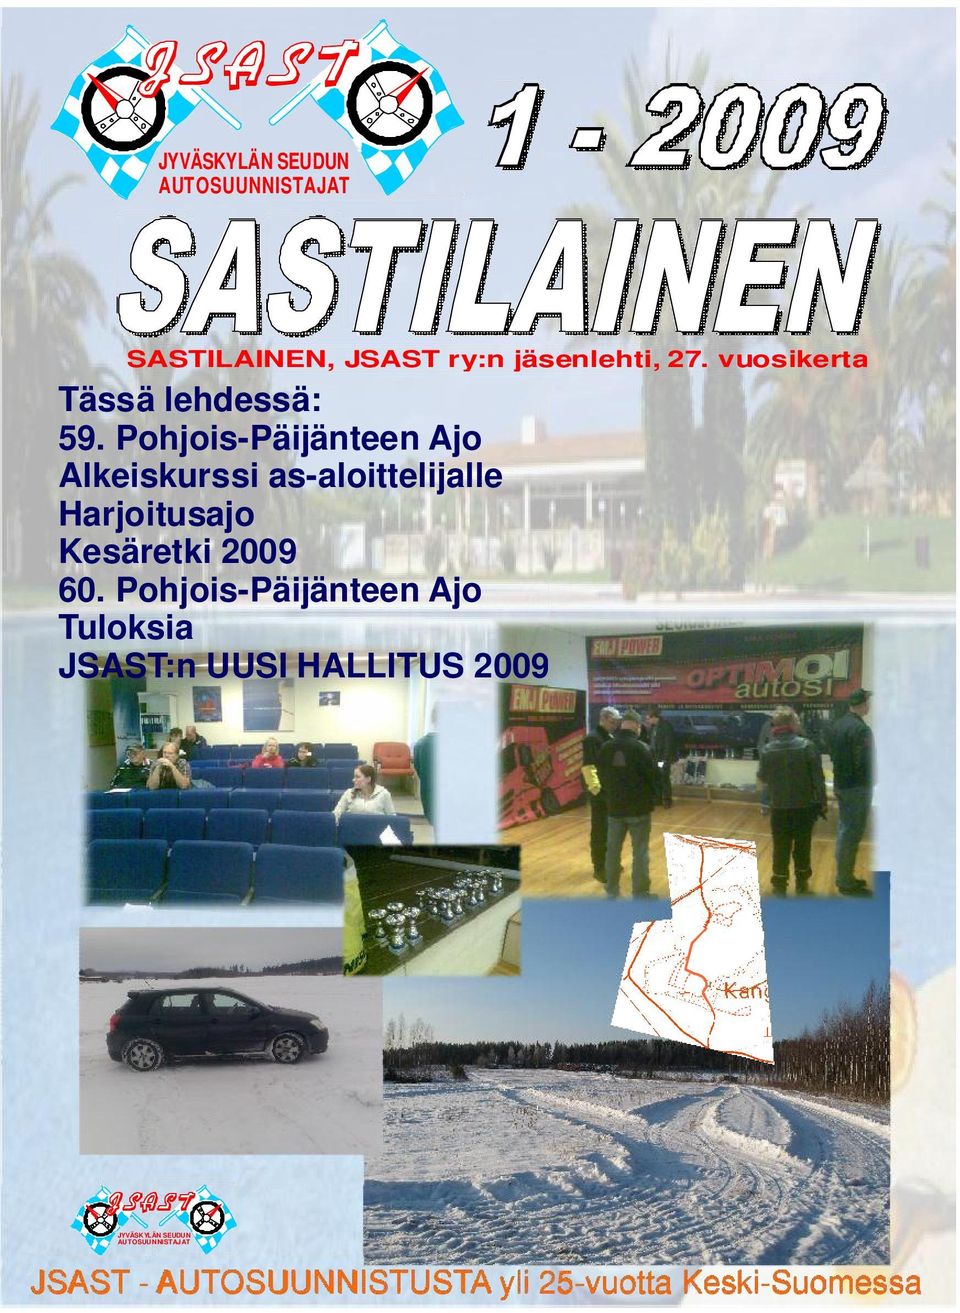 Pohjois-Päijänteen Ajo Alkeiskurssi as-aloittelijalle Harjoitusajo Kesäretki 2009 60.